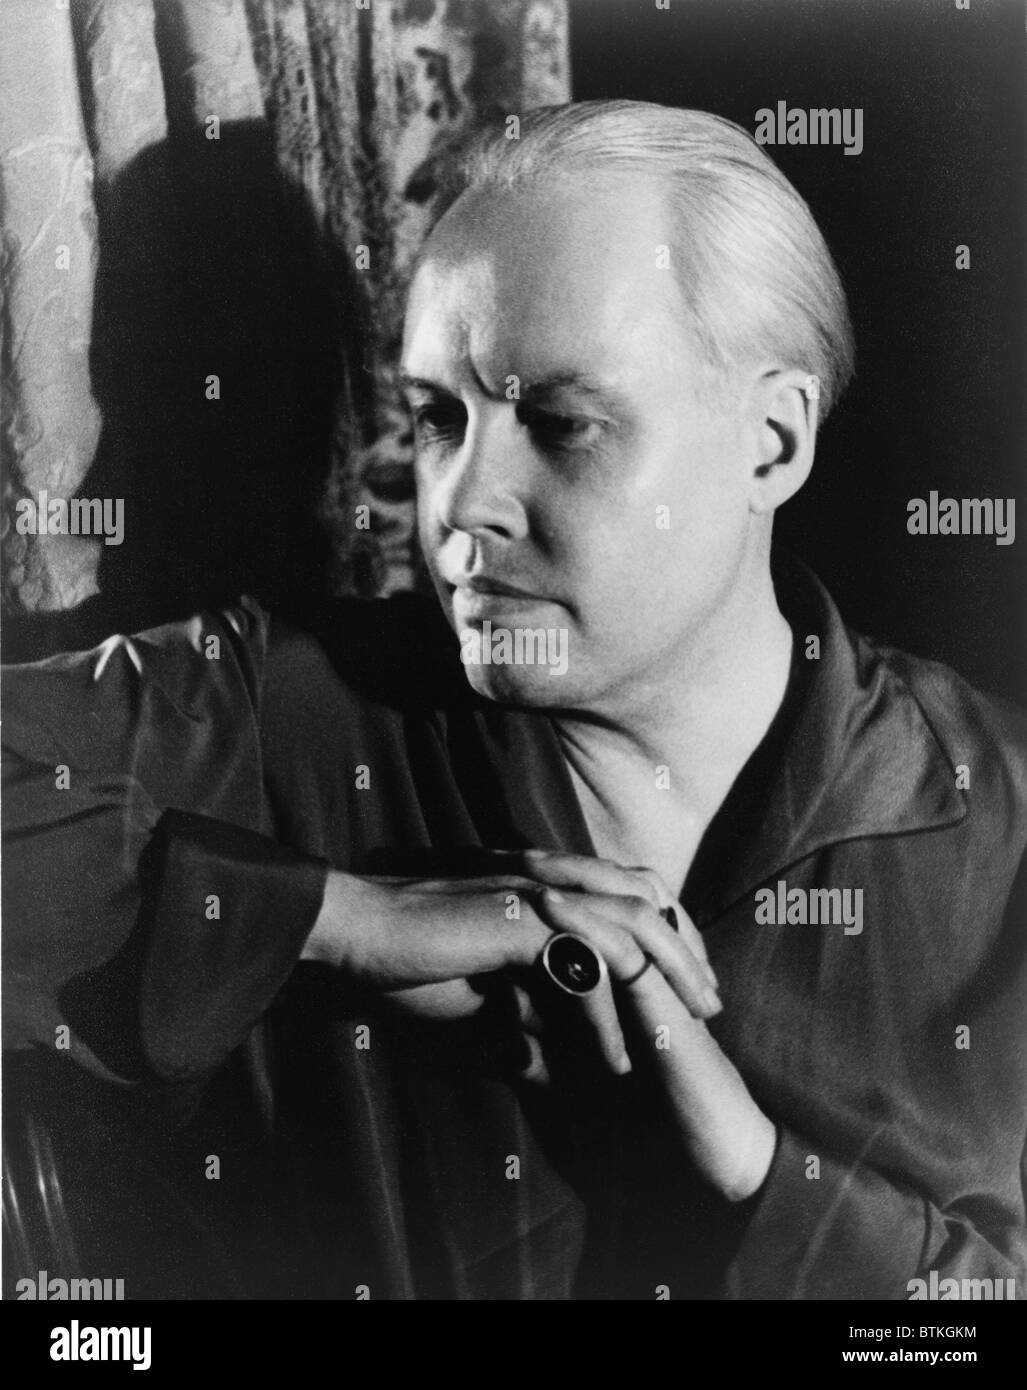 Carl Van Vechten (1880-1964), American writer and photographer in 1934 self-portrait. Stock Photo